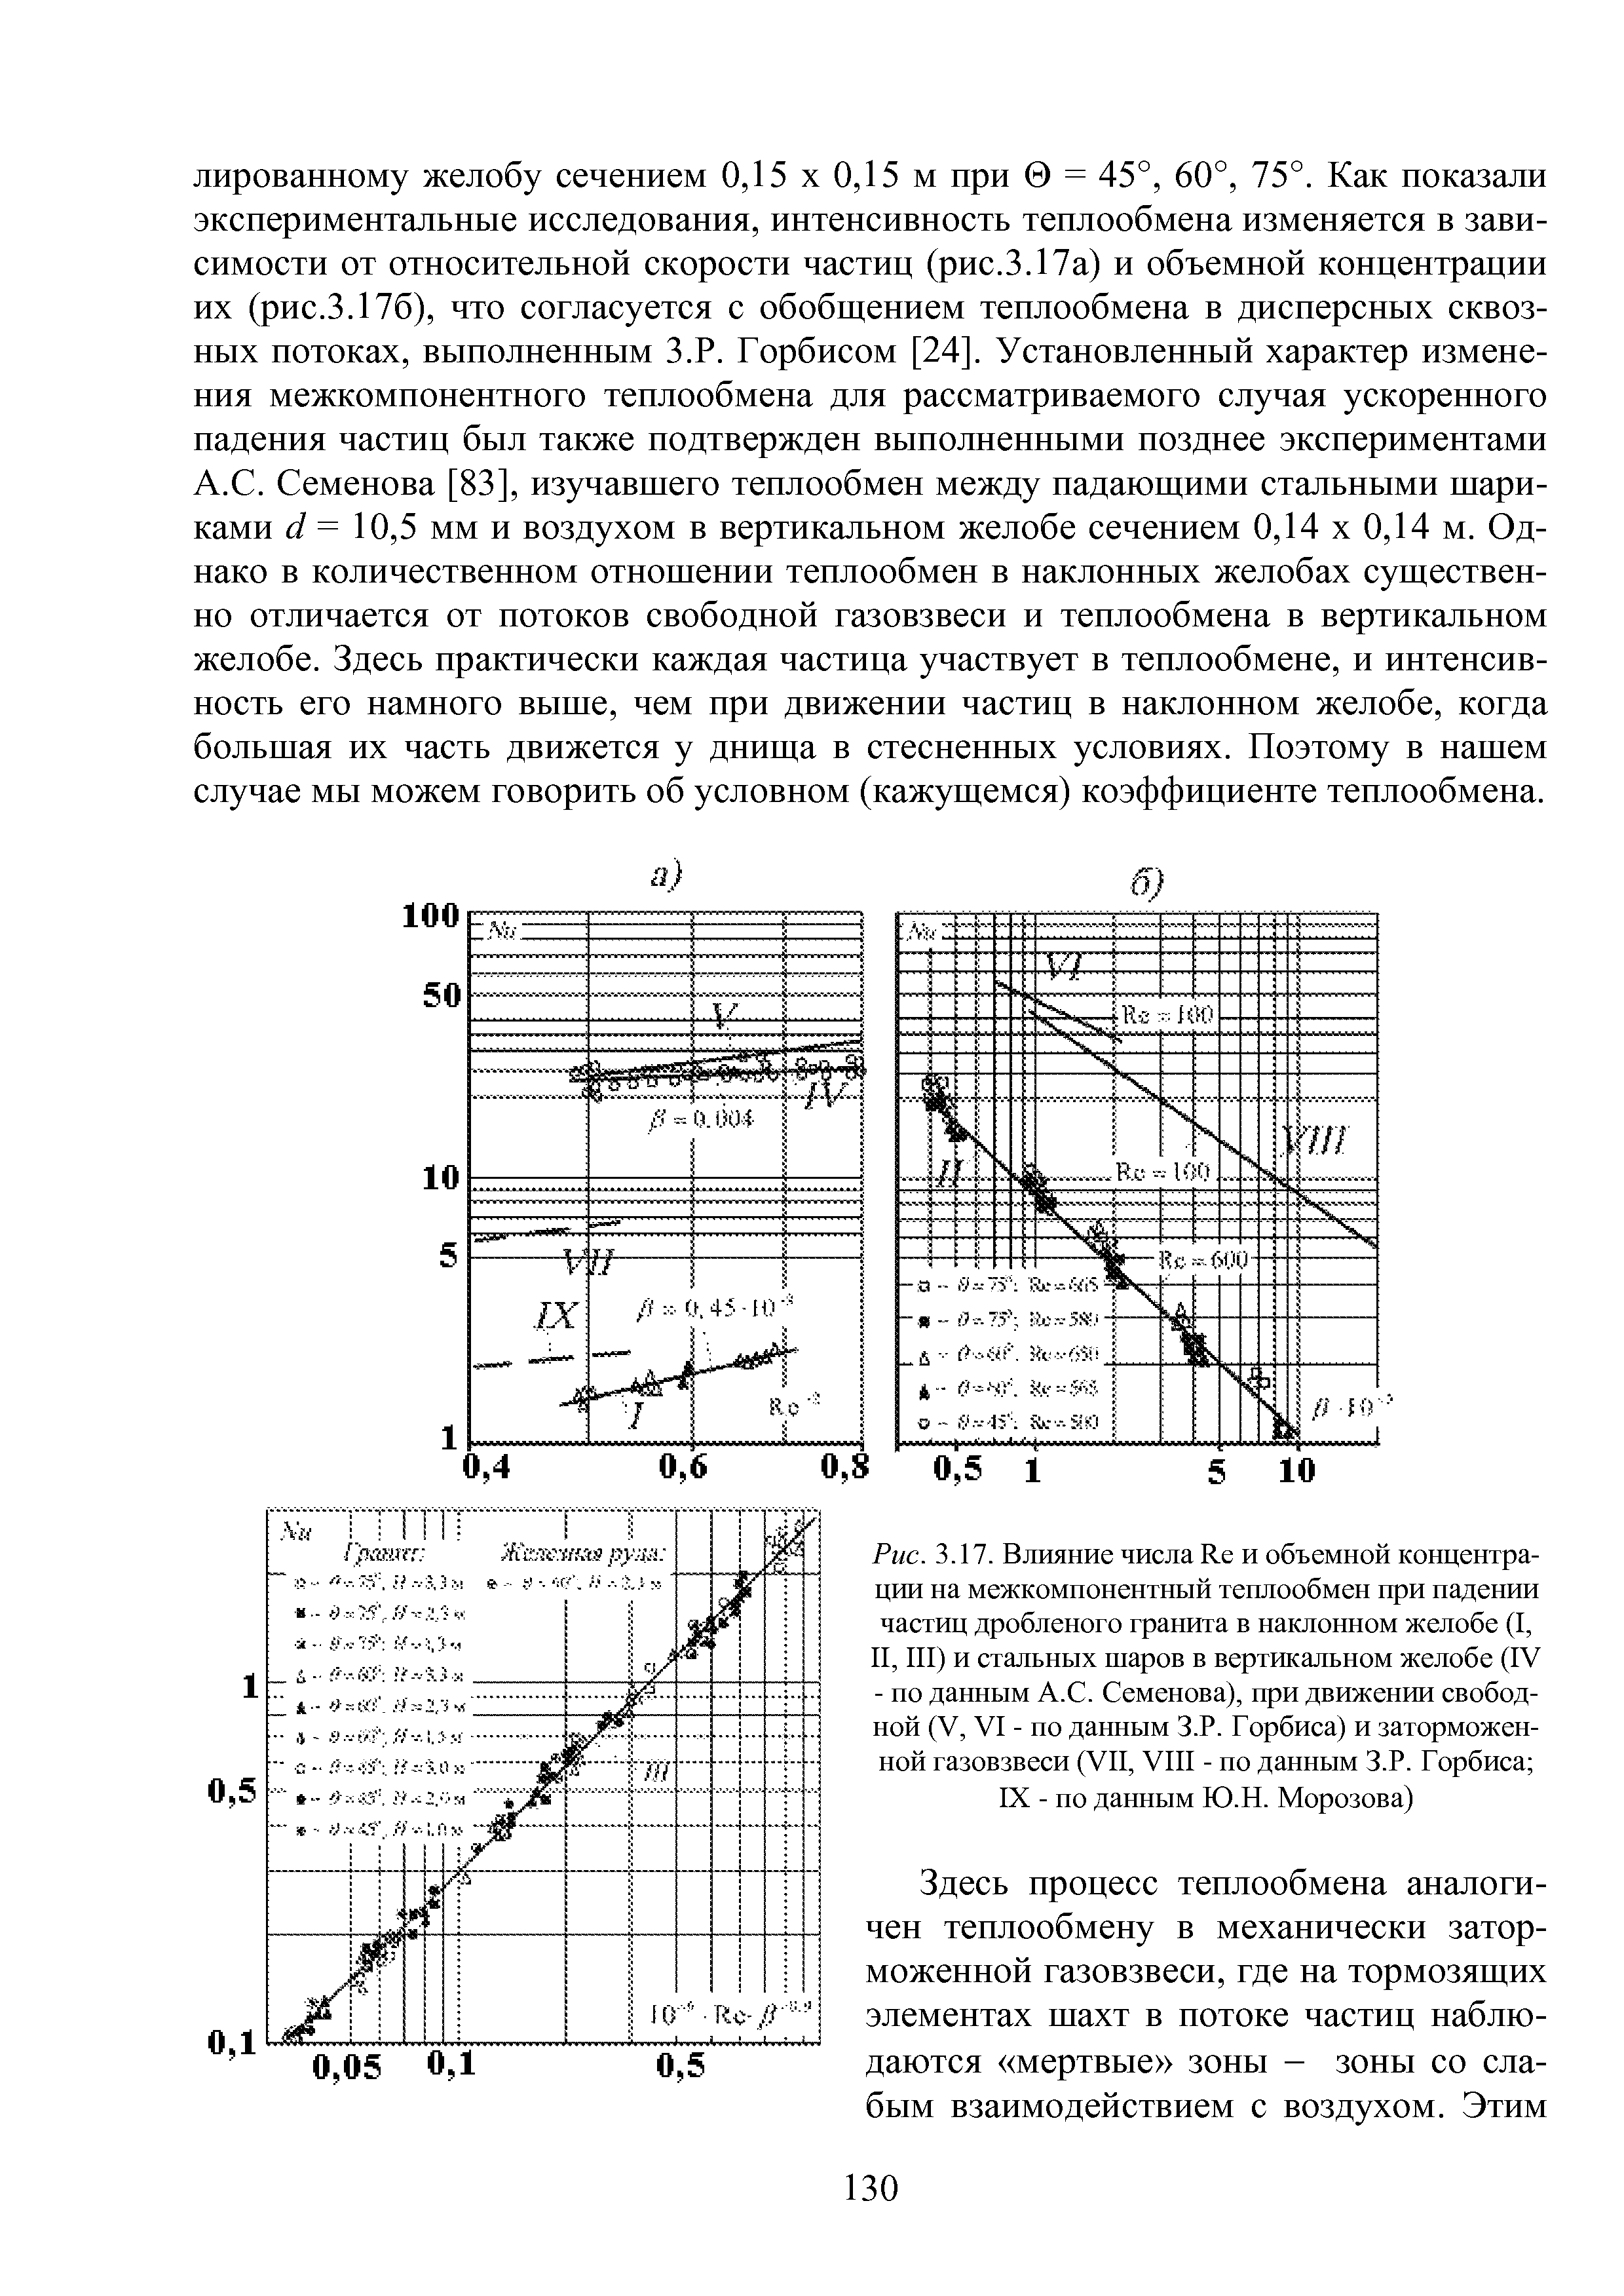 Рис. 3.17. Влияние числа Re и объемной концентрации на межкомпонентный теплообмен при падении частиц дробленого гранита в наклонном желобе (I, II, III) и стальных шаров в вертикальном желобе (IV - по данным A. . Семенова), при движении свободной (V, VI - по данным З.Р. Горбиса) и заторможенной газовзвеси (VII, VIII - по данным З.Р. Горбиса 
